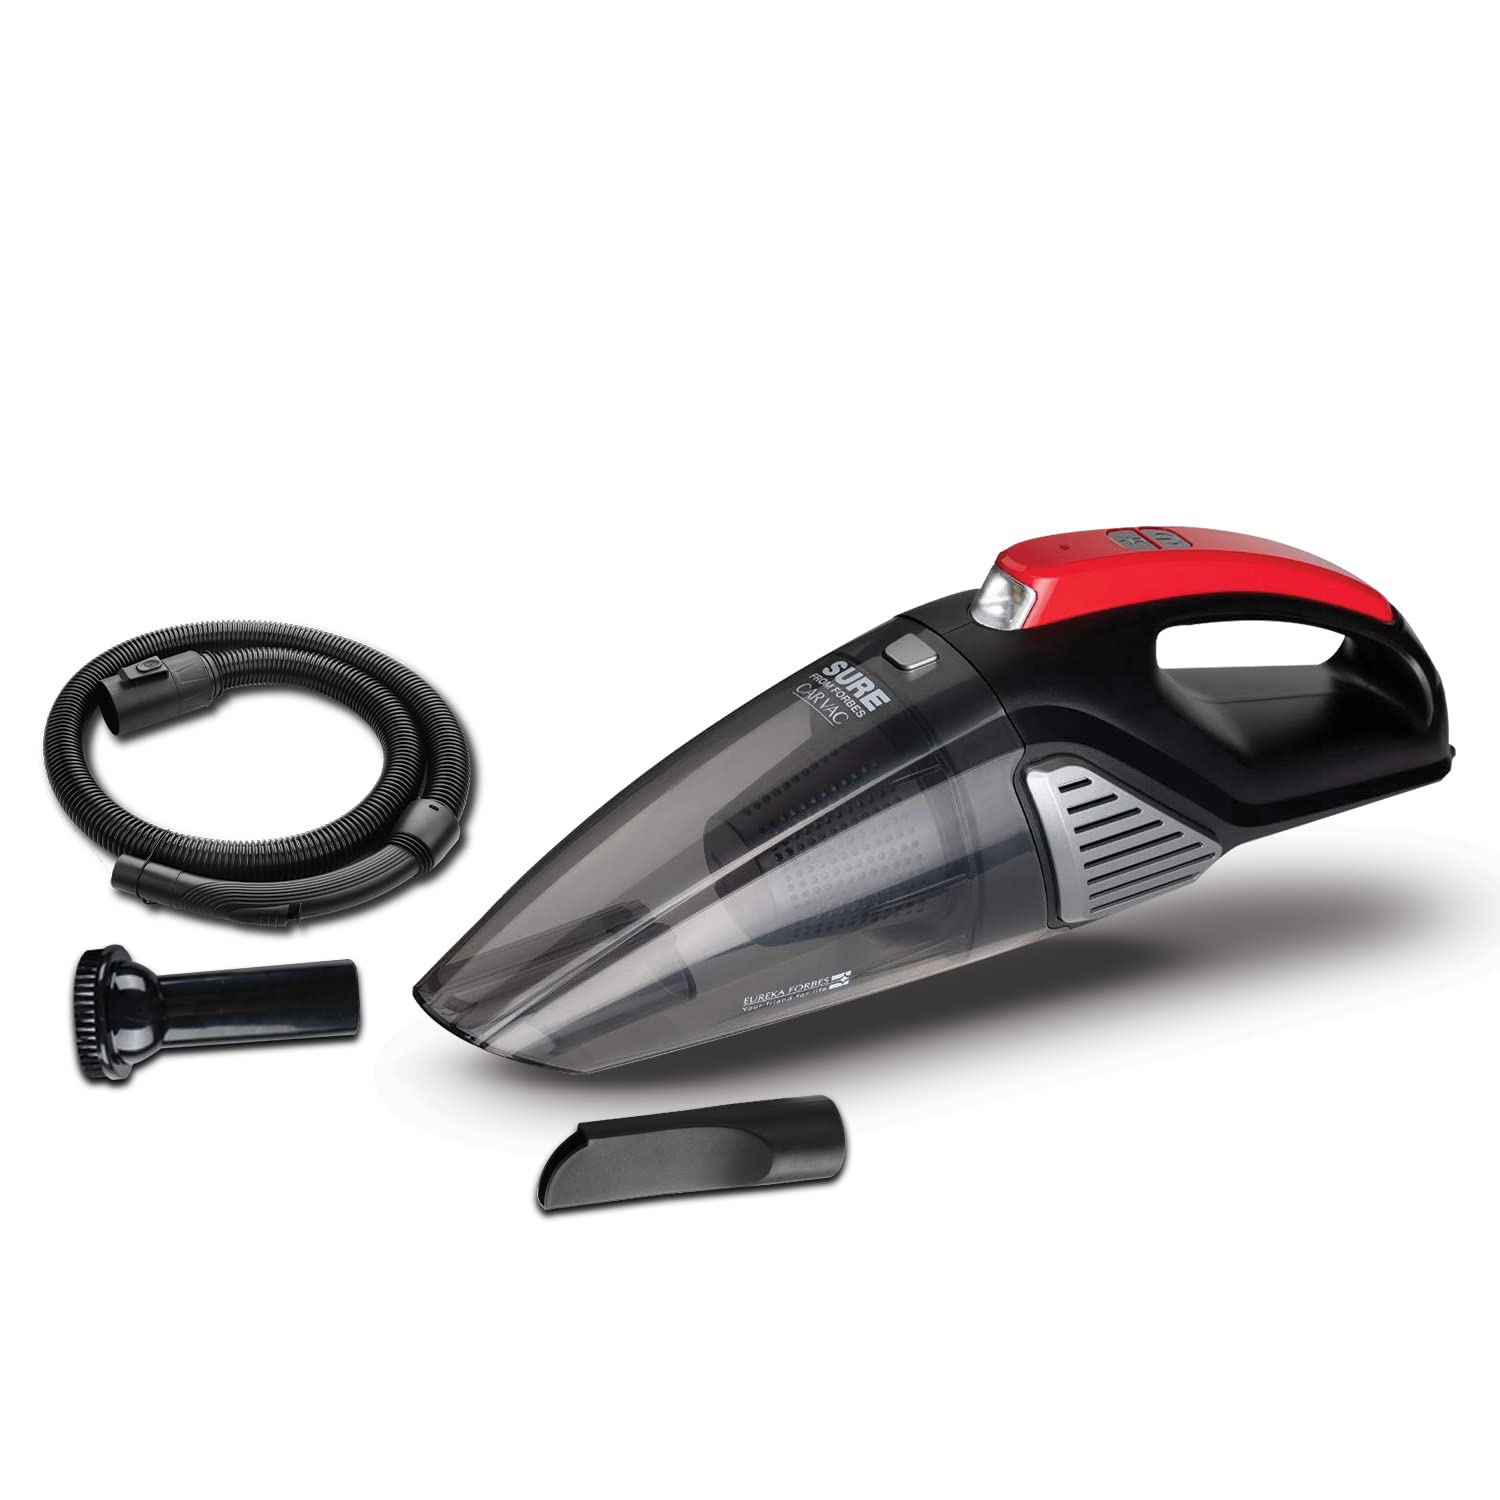 Eureka Forbes Car Vacuum Cleaner